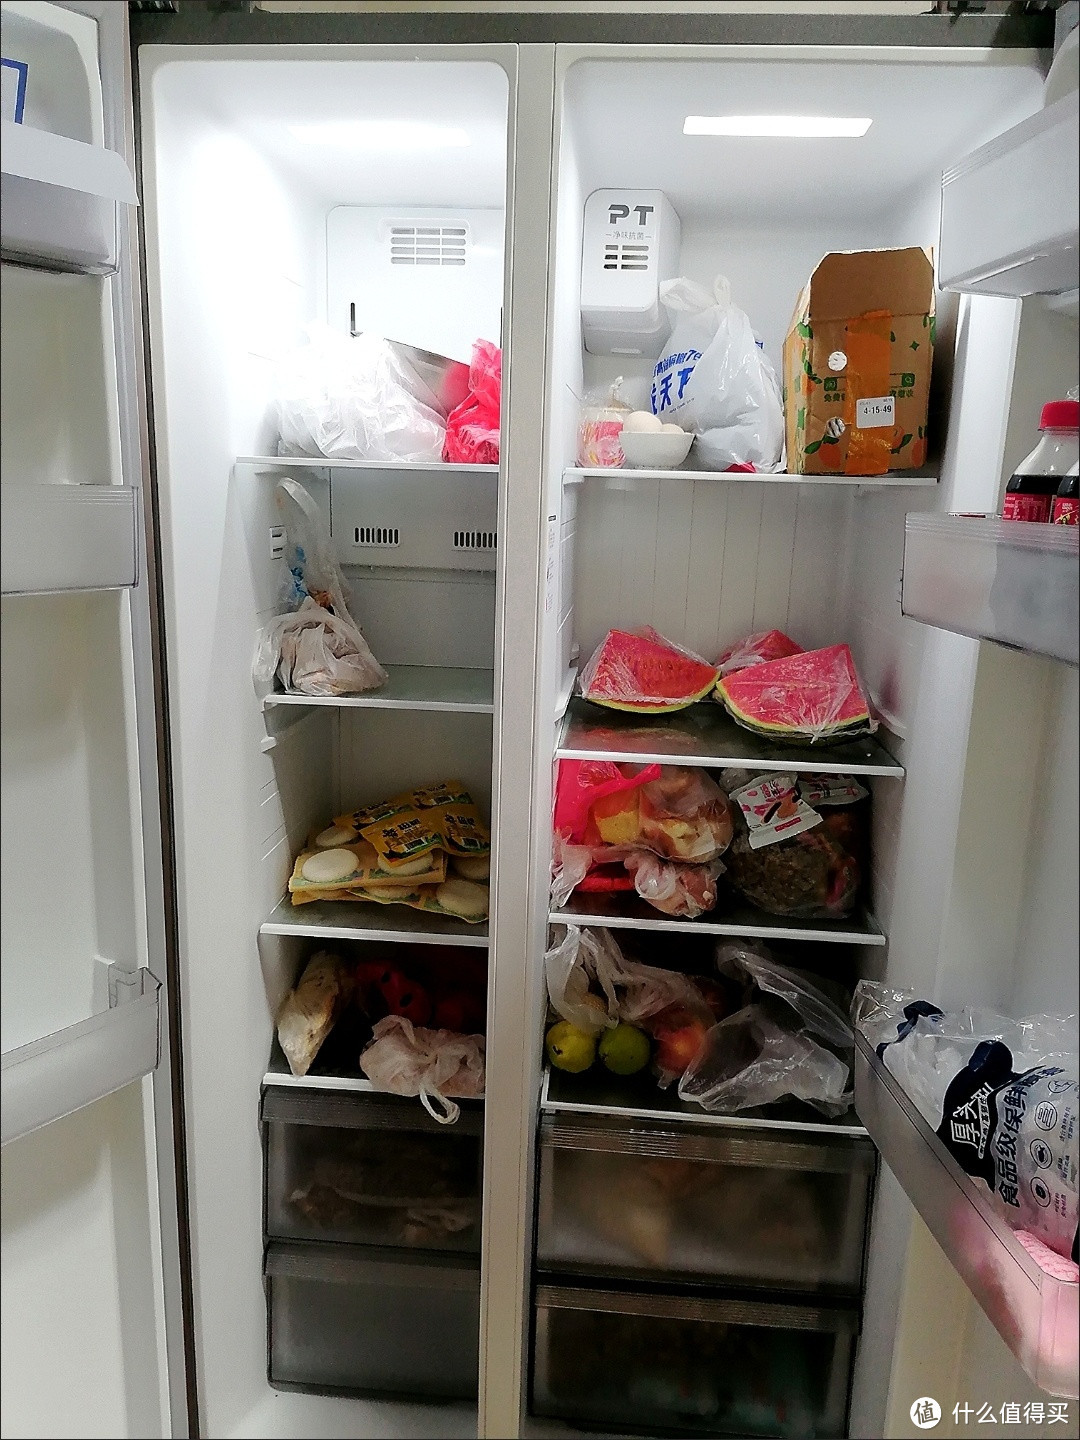 以前没有冰箱，人民如何保存食物呢？